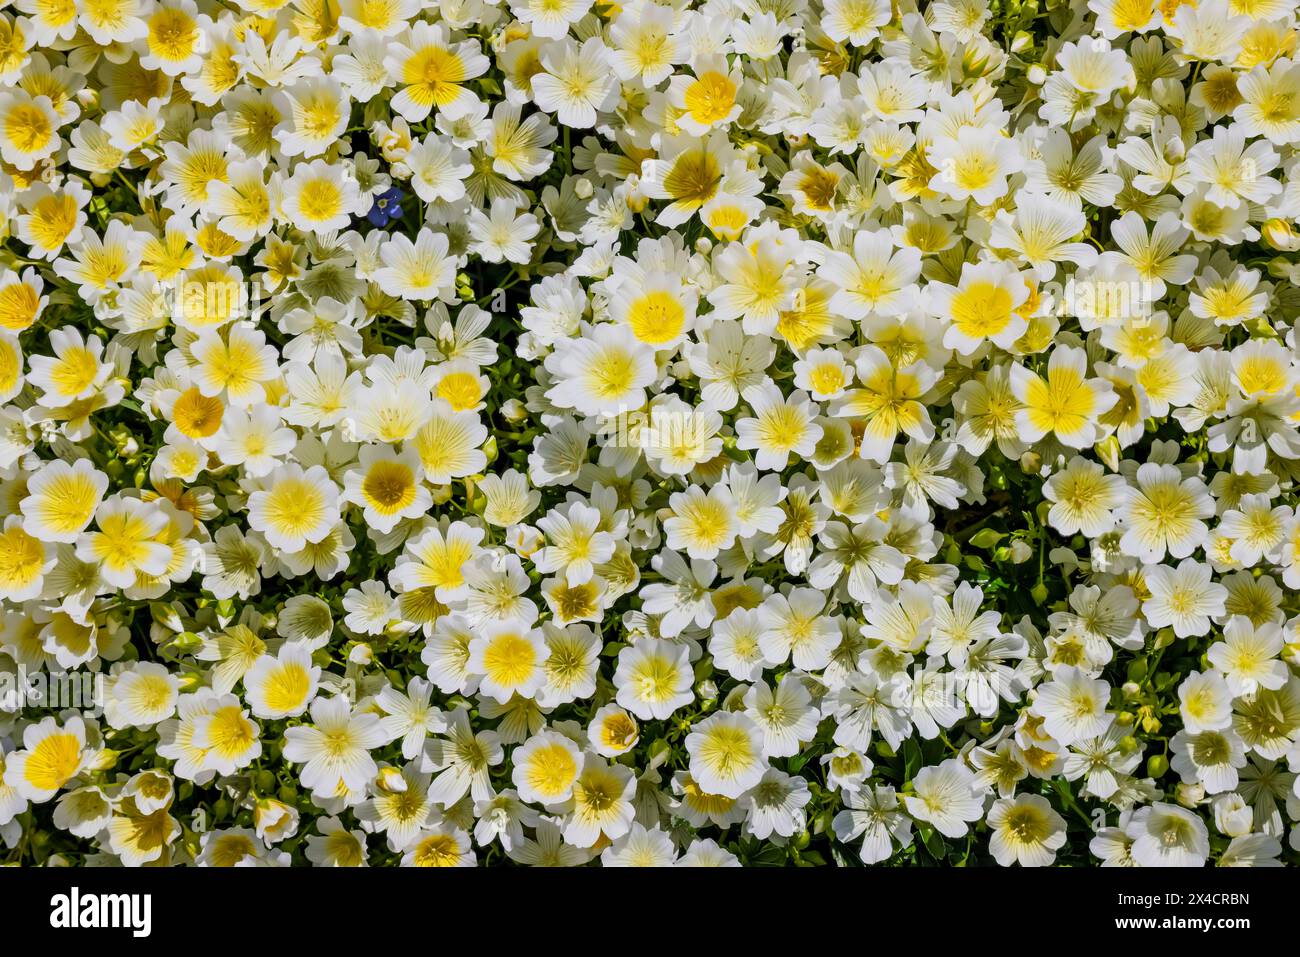 USA, Washington State, Bellevue, Bellevue Botanical Garden piantagioni di massa in fiore bianco e giallo Foto Stock